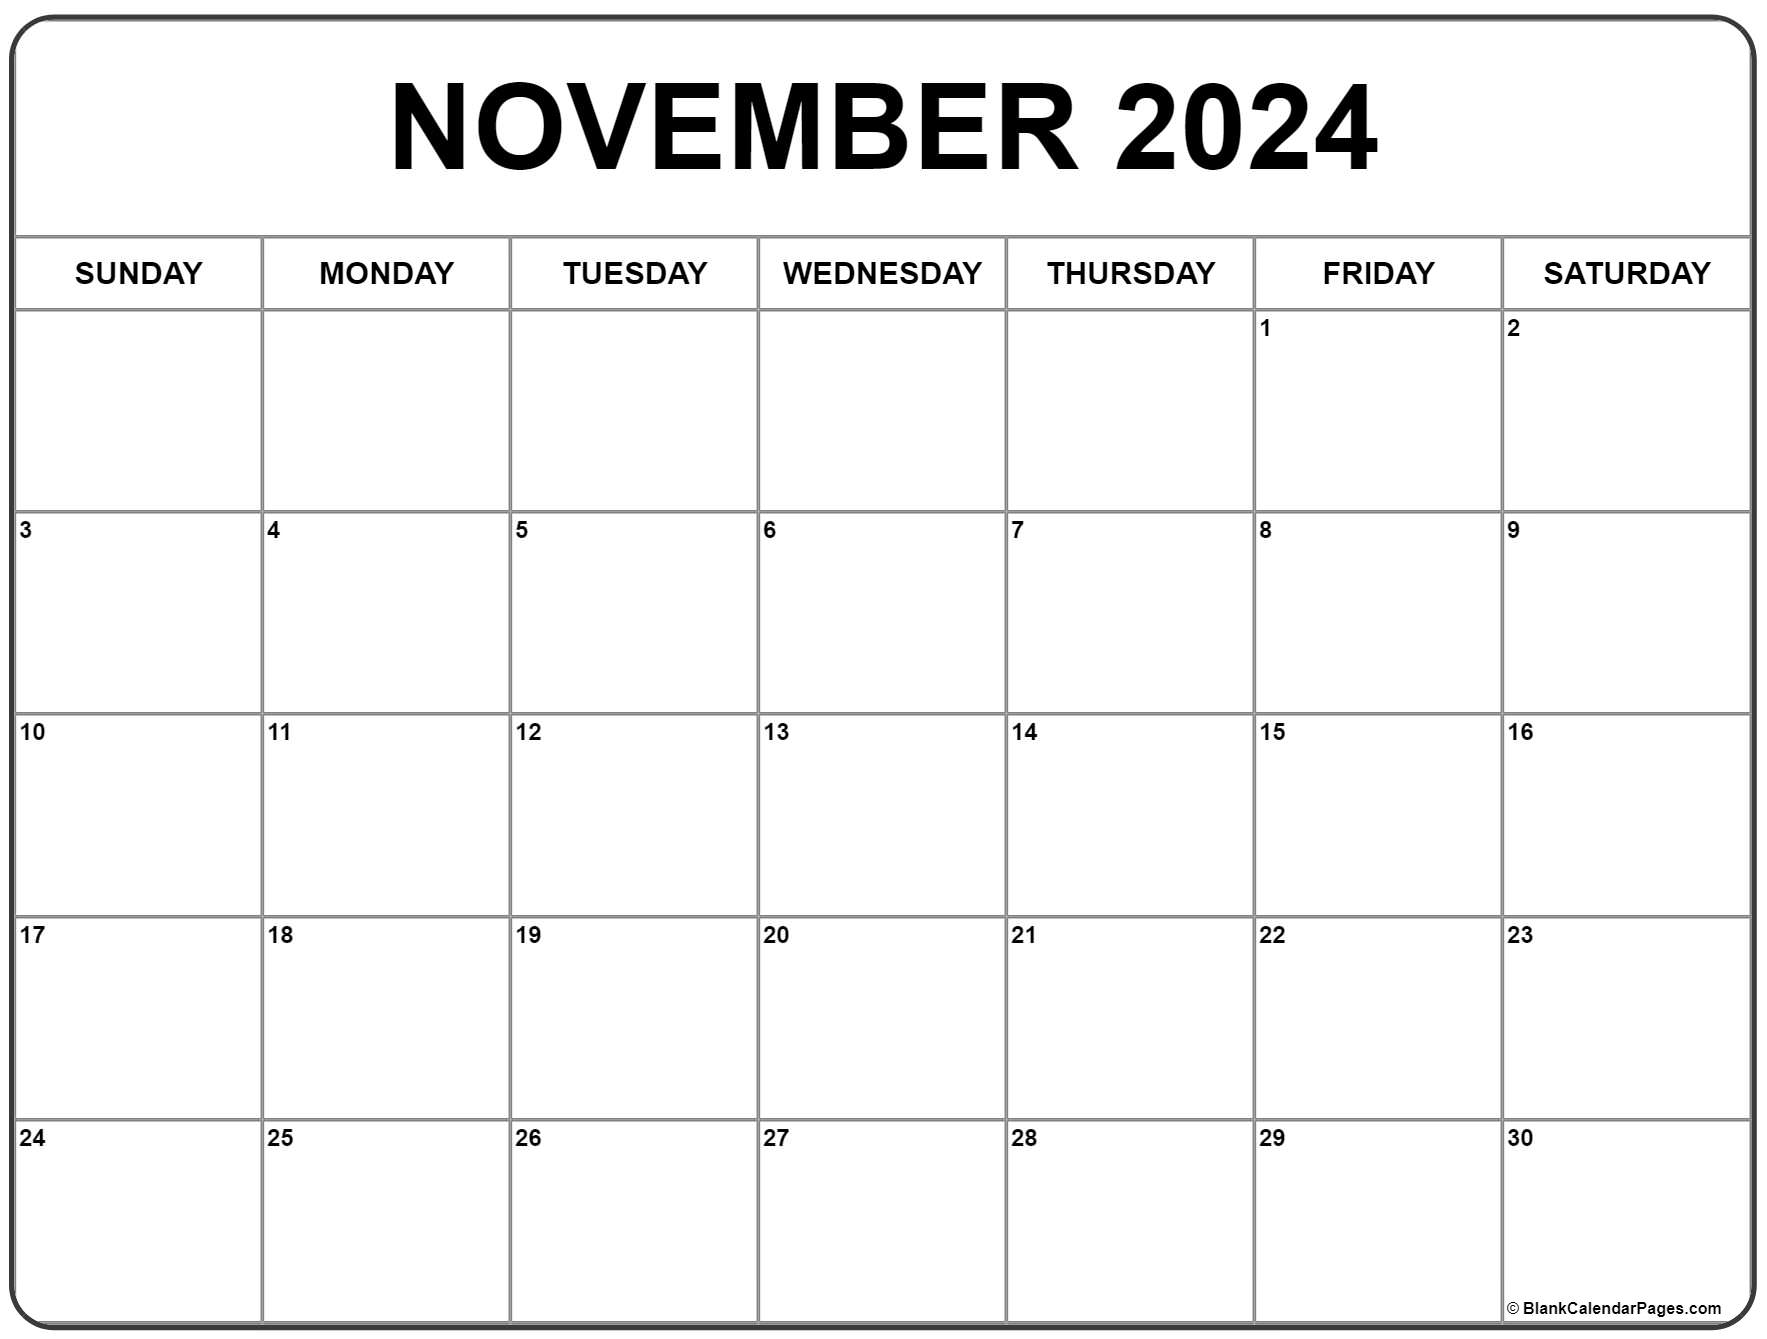 November 2022 Calendar Blank November 2022 Calendar | Free Printable Calendar Templates